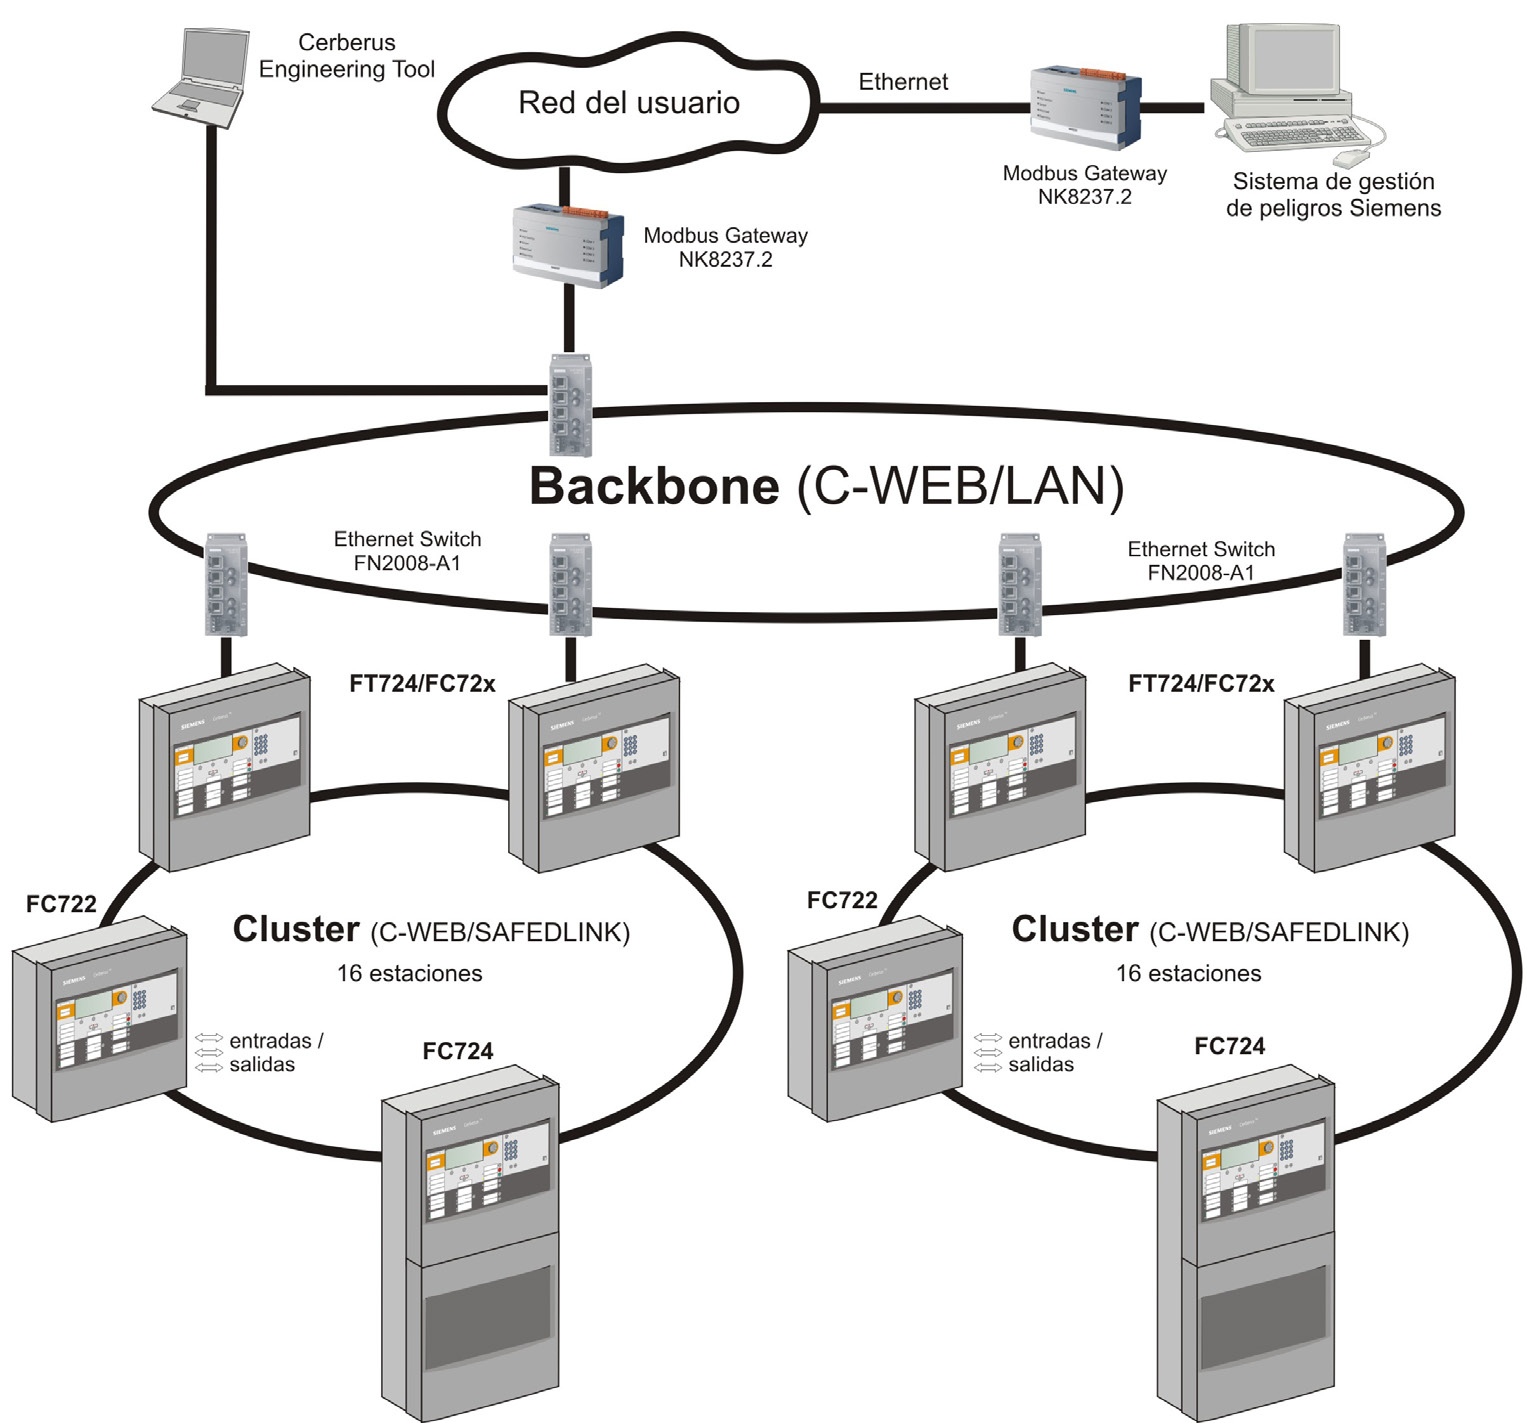 Mediante una red troncal o Backbone de fibra óptica (C-WEB/LAN) se pueden conectar en red hasta 4 de los clusters mencionados previamente